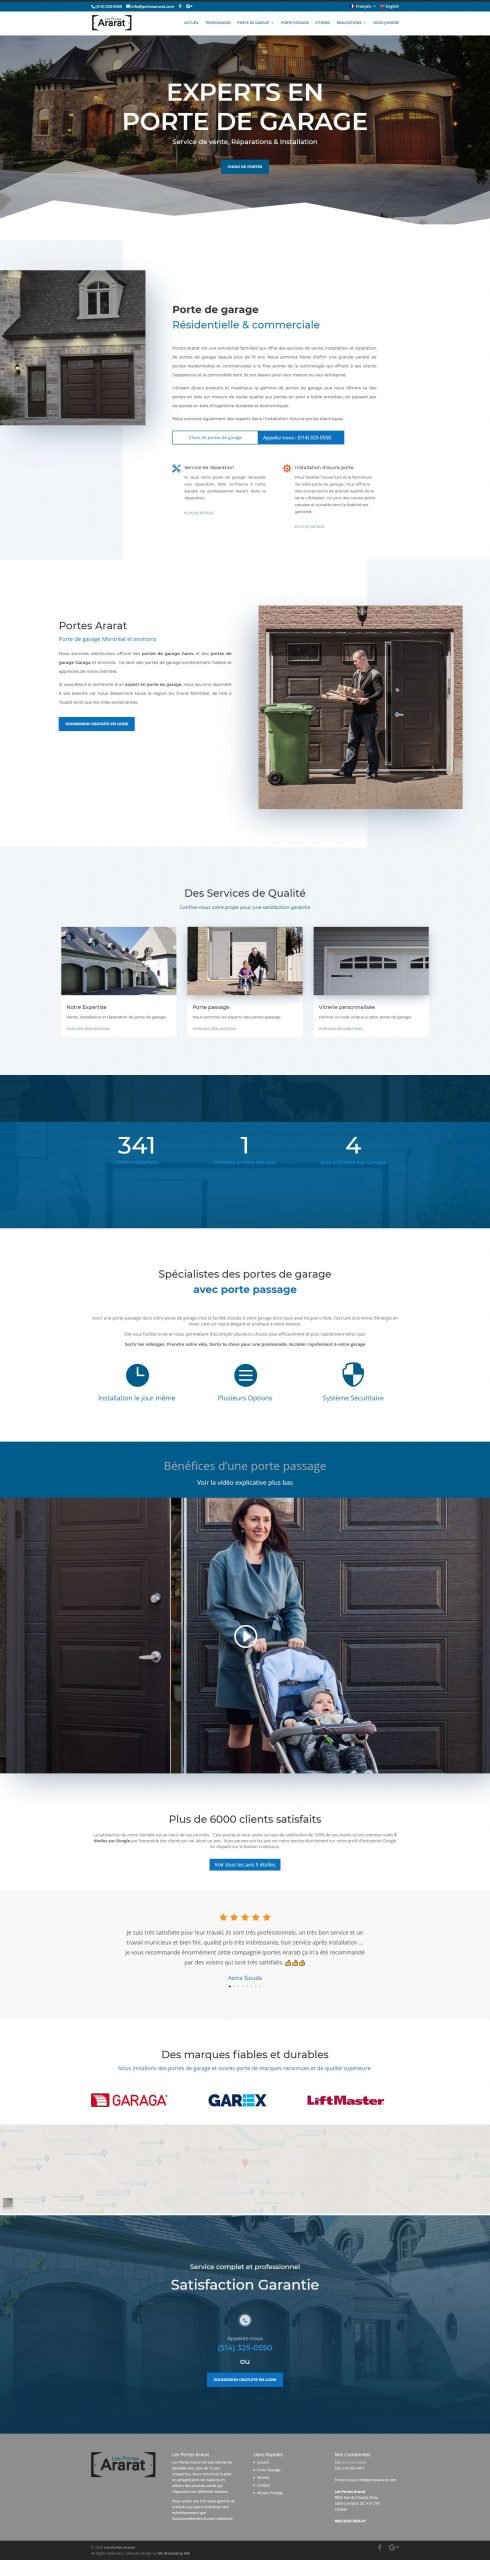 gararage door company website design scaled